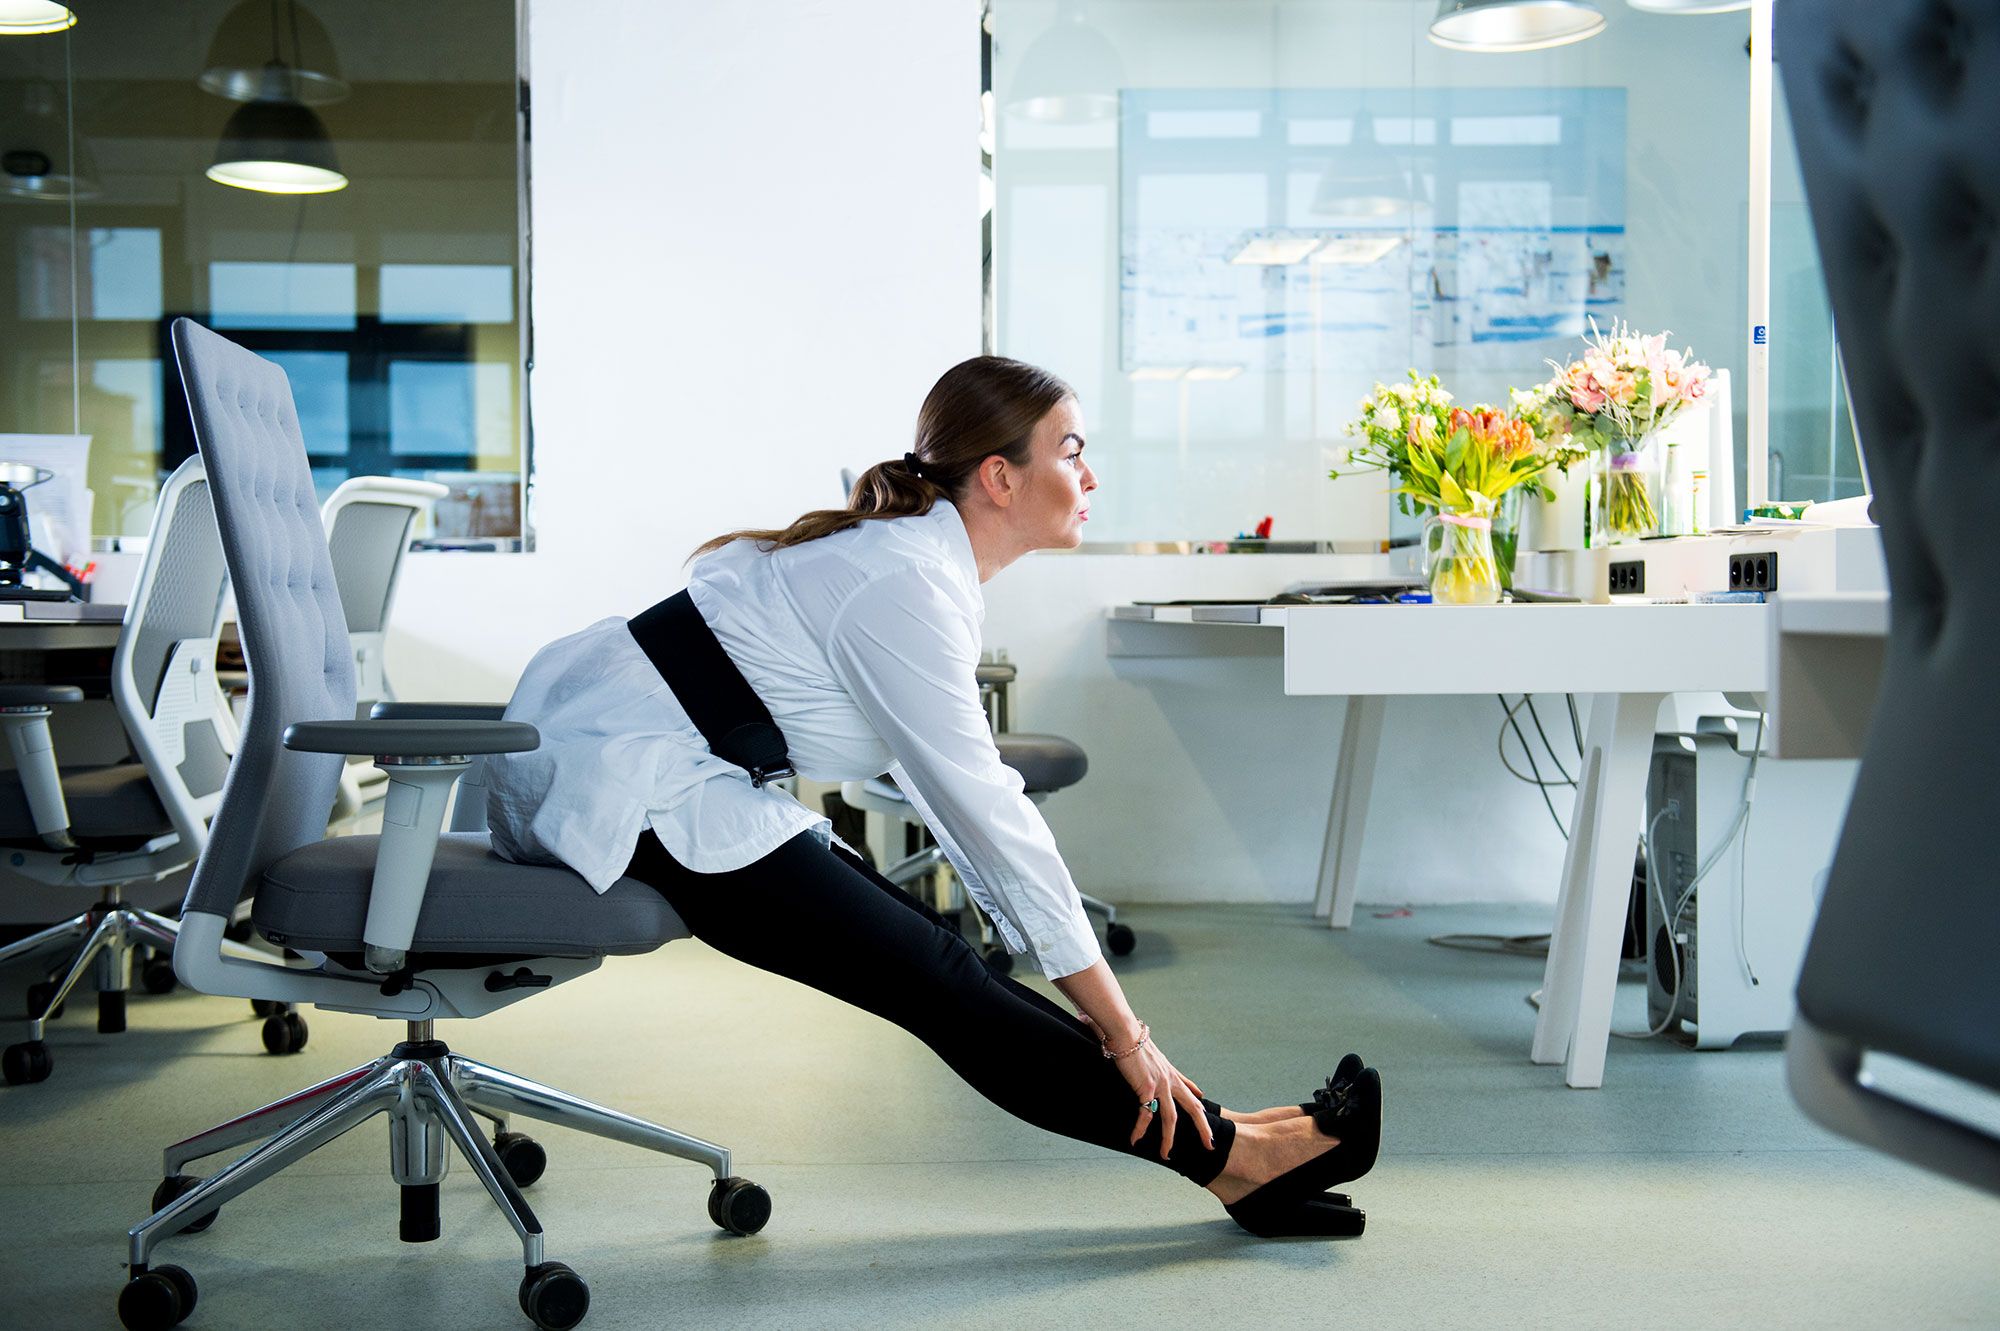 Женщина сидячий образ жизни. Тренировка в офисе. Упражнения в офисе. Разминка для спины в офисе. Спортивные упражнения в офисе.